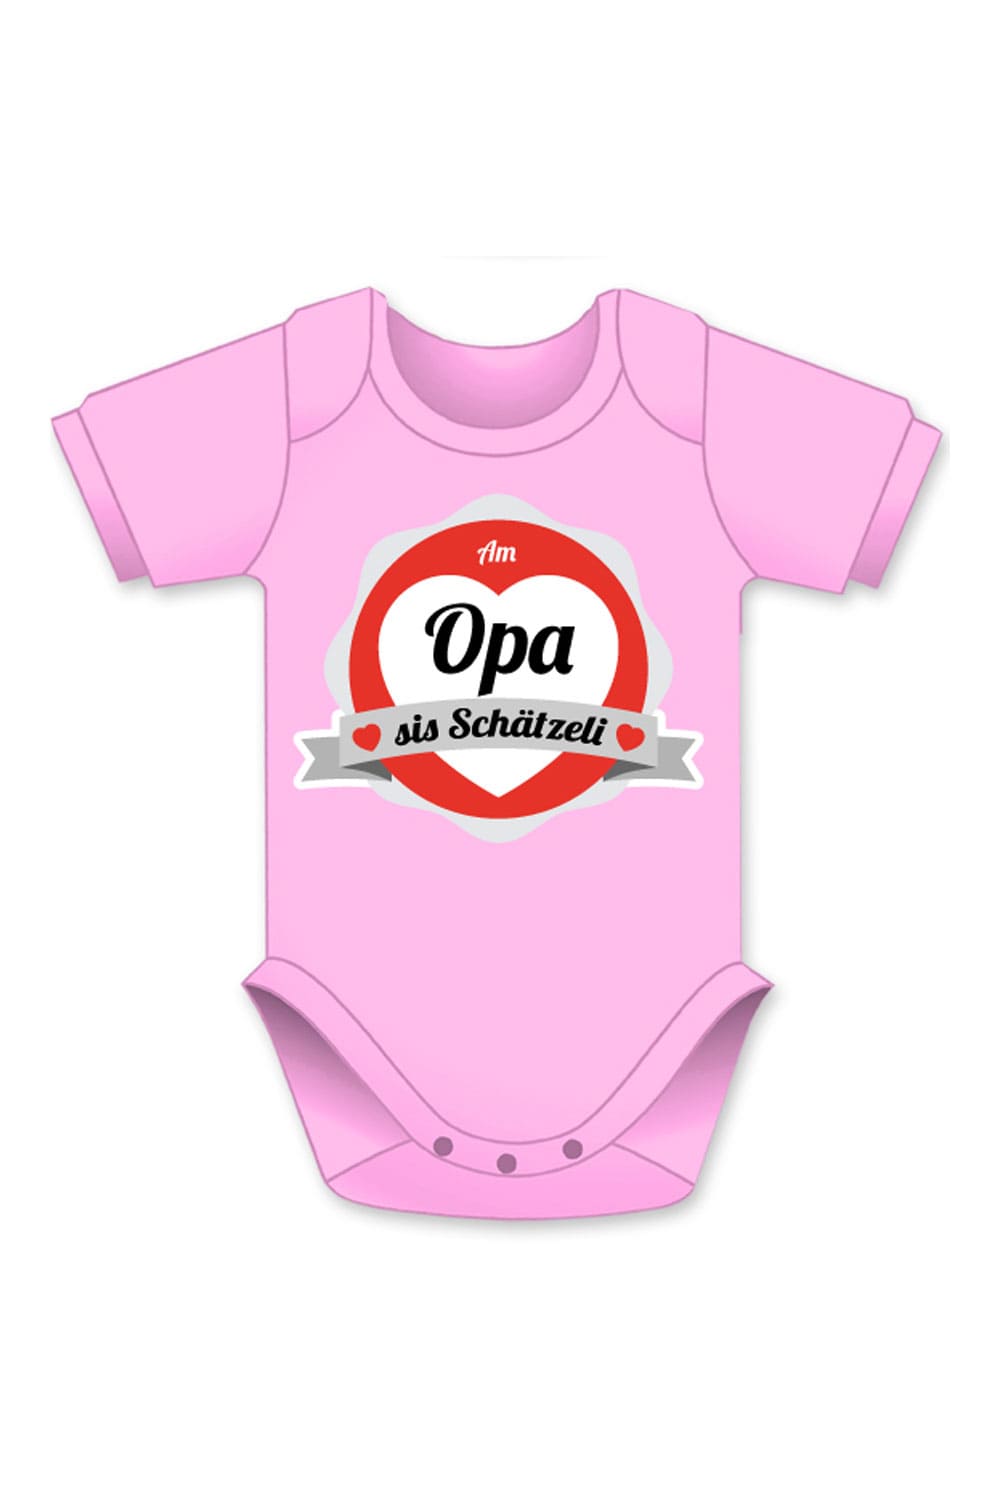 Opa Schaetzeli Baby Body mit Aufschrift und Bild in diversen Farben und Groessen. Ideales Mitbringsel zur Geburt